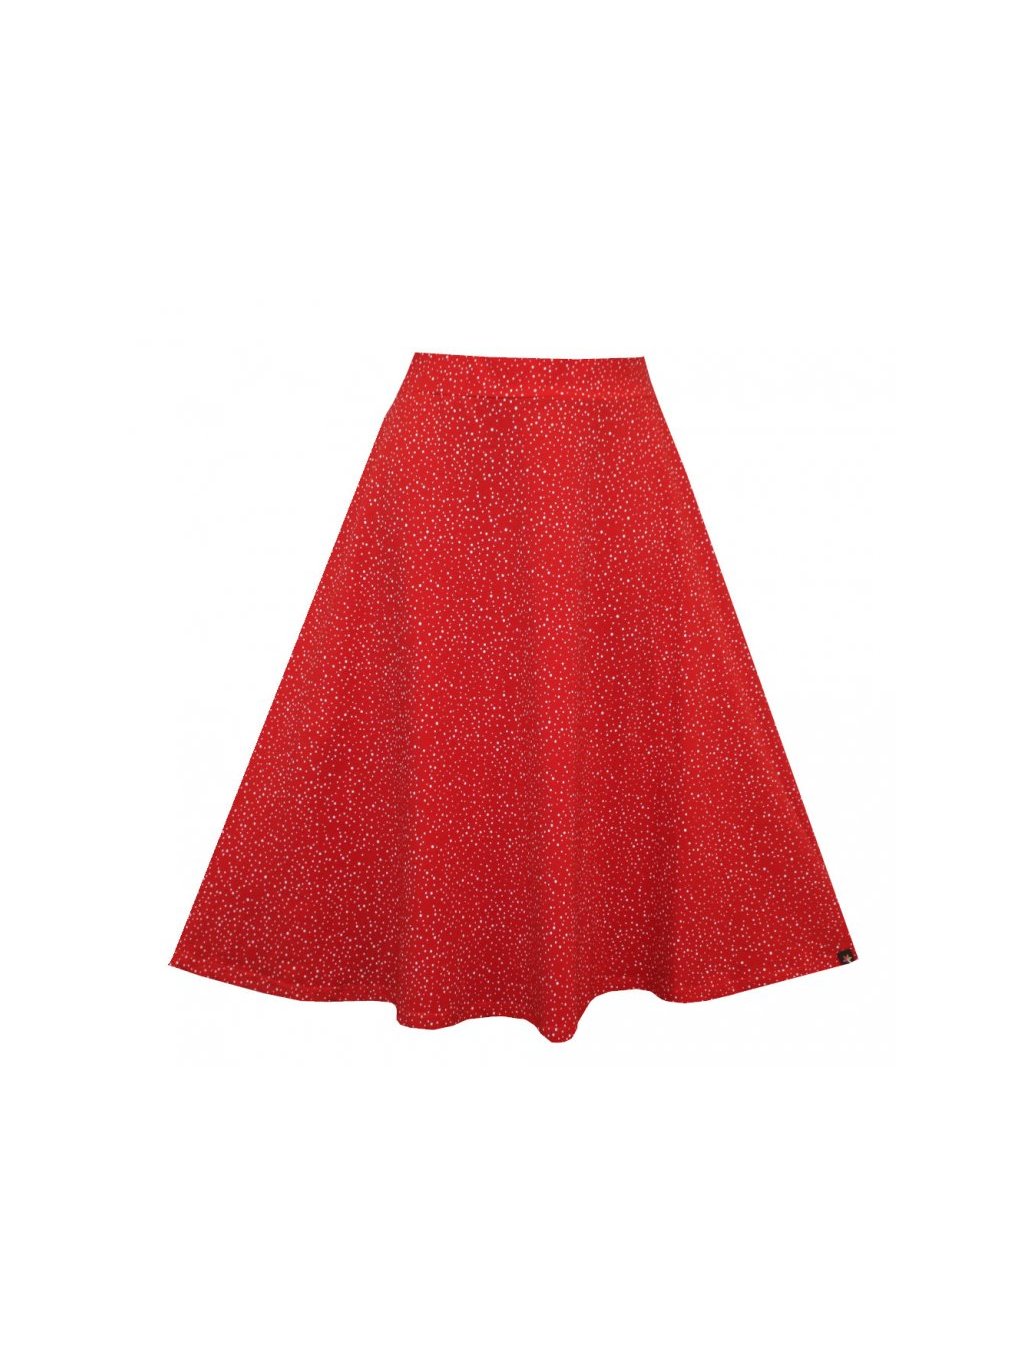 Půlkolová červená sukně do pasu AGÁTA, drobné bílé puntíčky